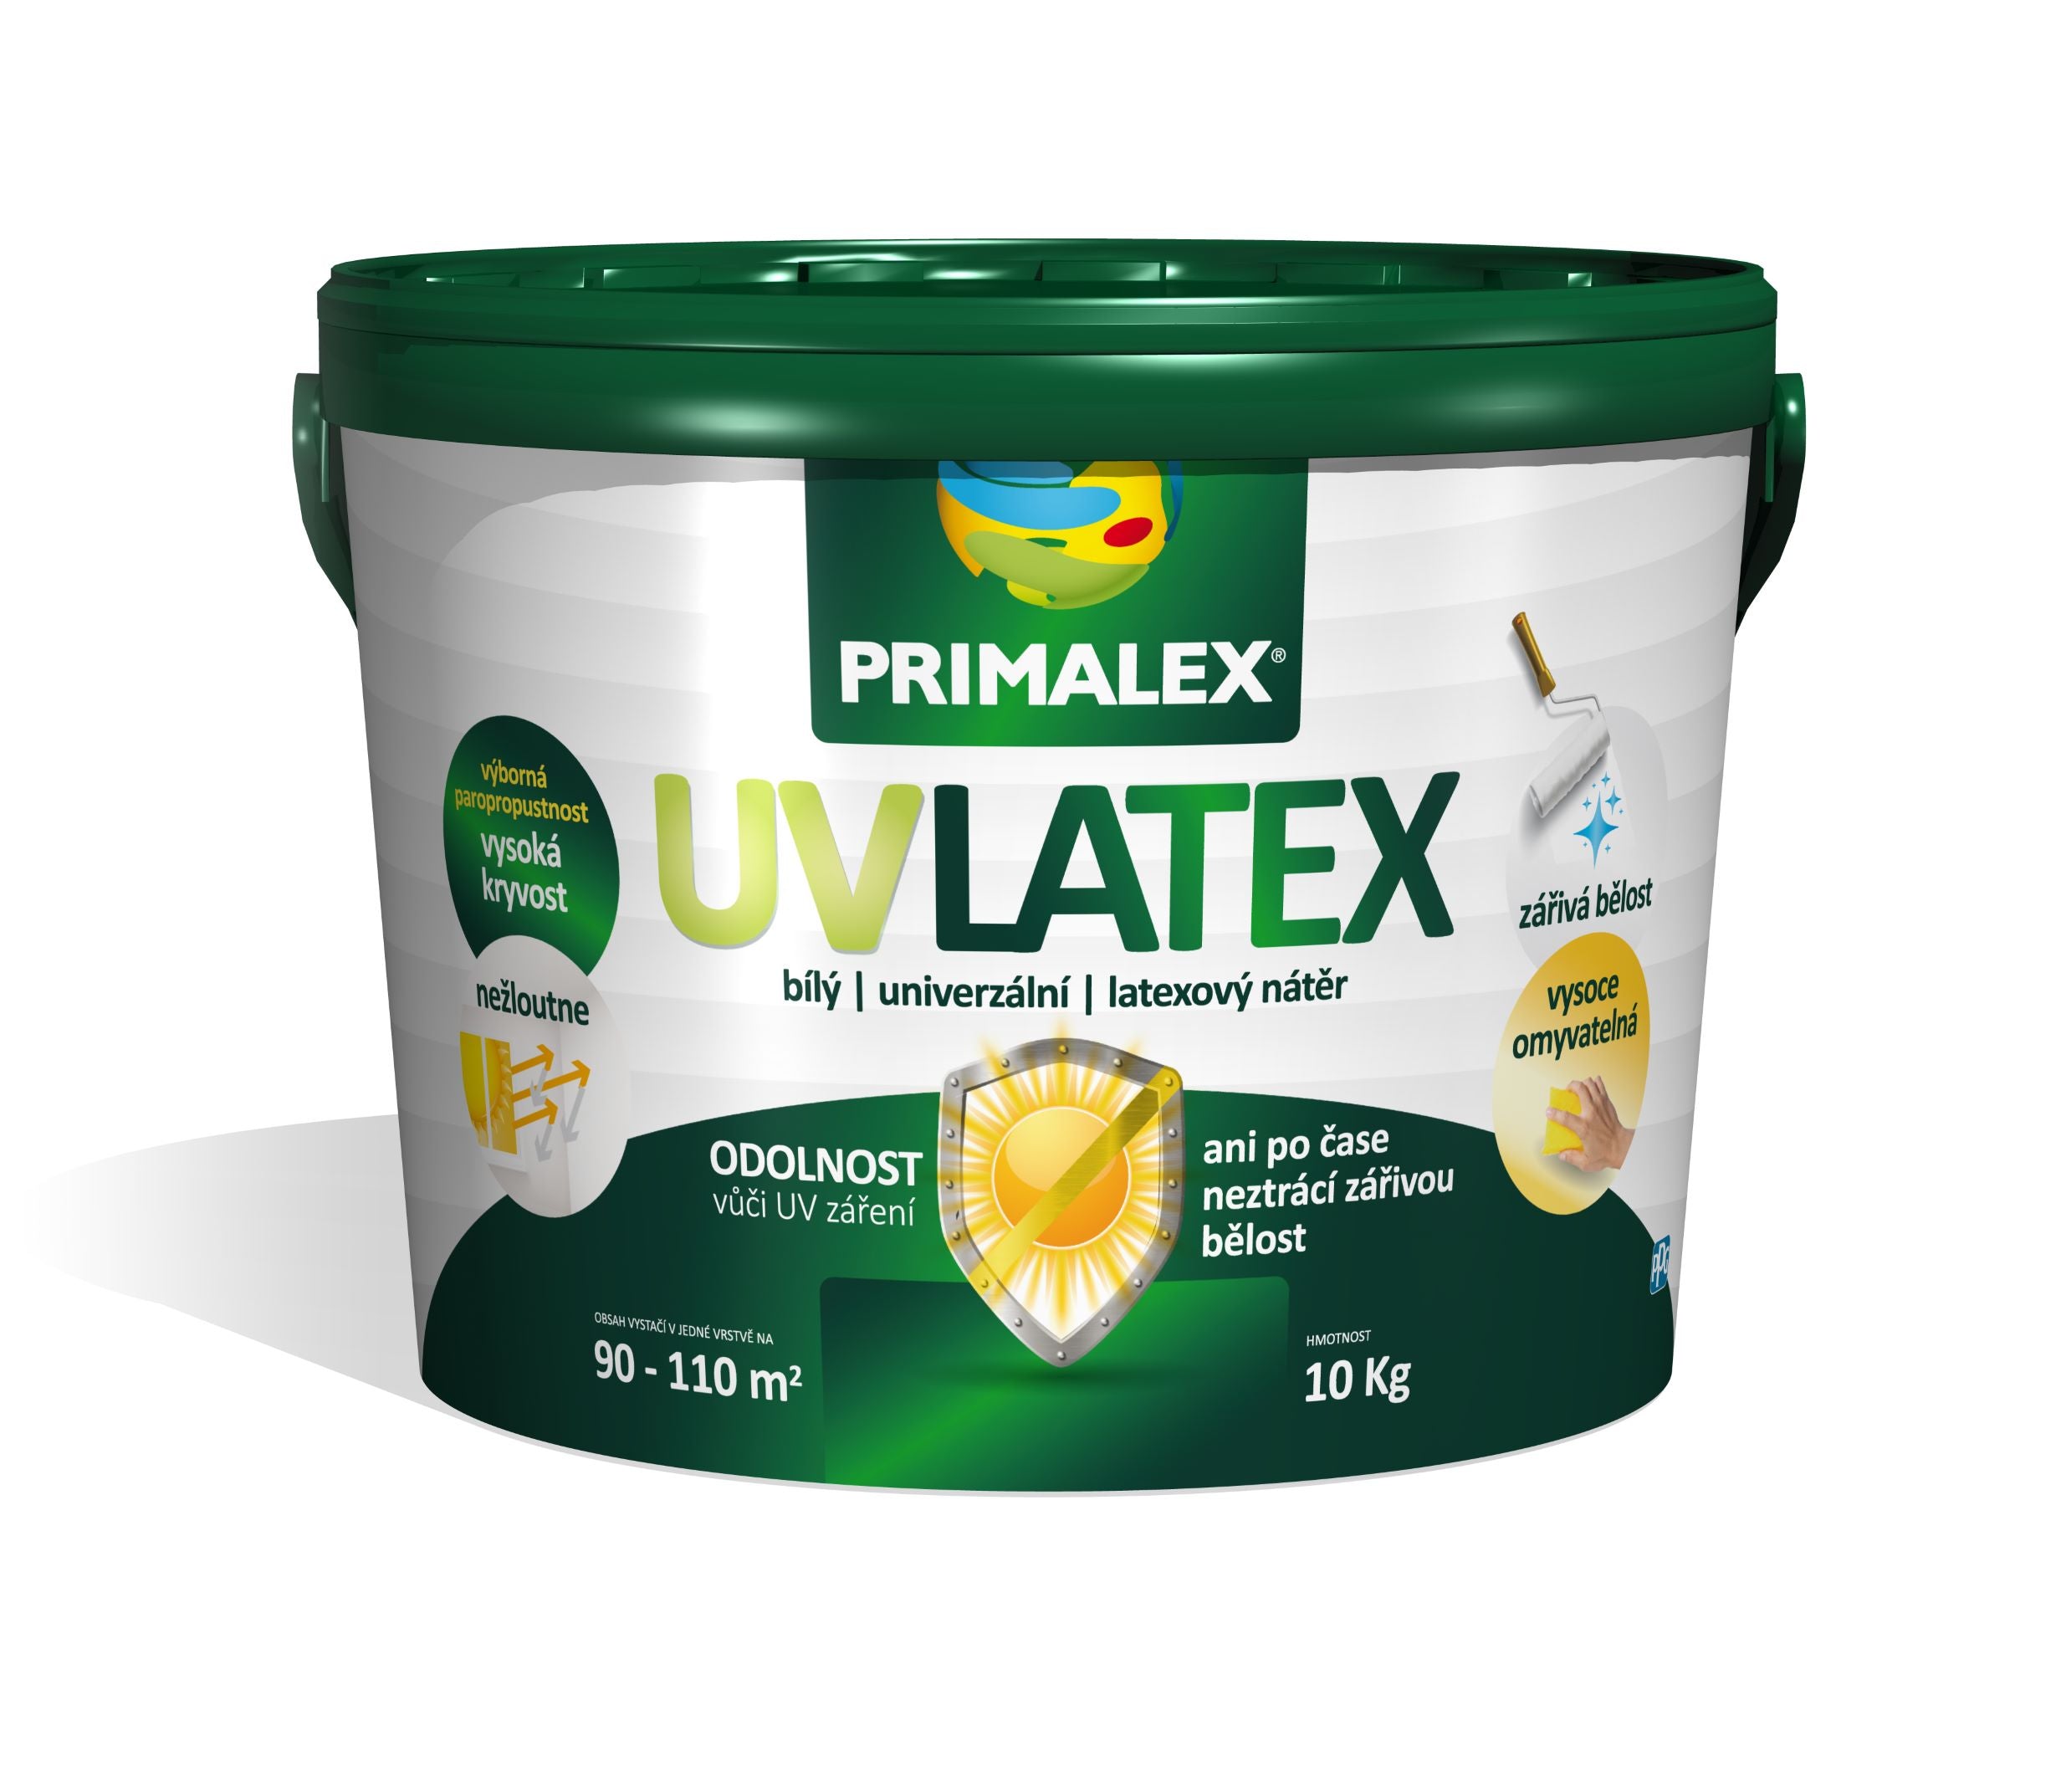 PRIMALEX UV LATEX biely univerzálny latexový náter